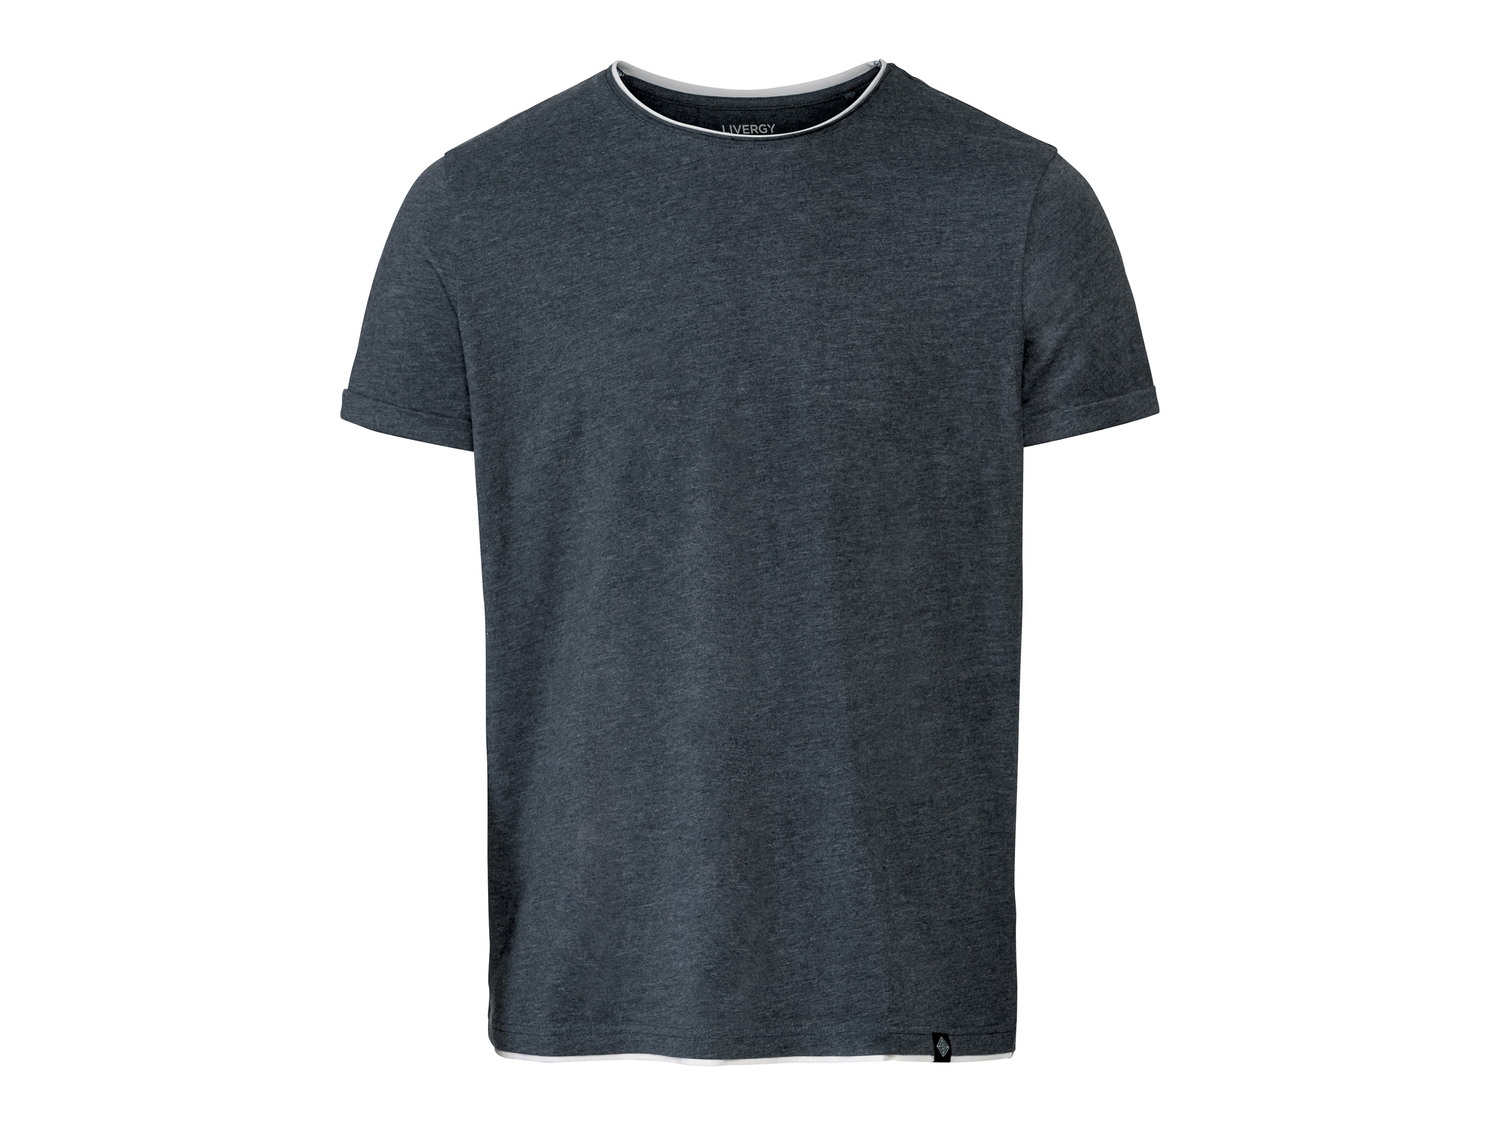 T-shirt da uomo Livergy, prezzo 4.99 &#8364; 
Misure: S-XL
Taglie disponibili

Caratteristiche

- ...